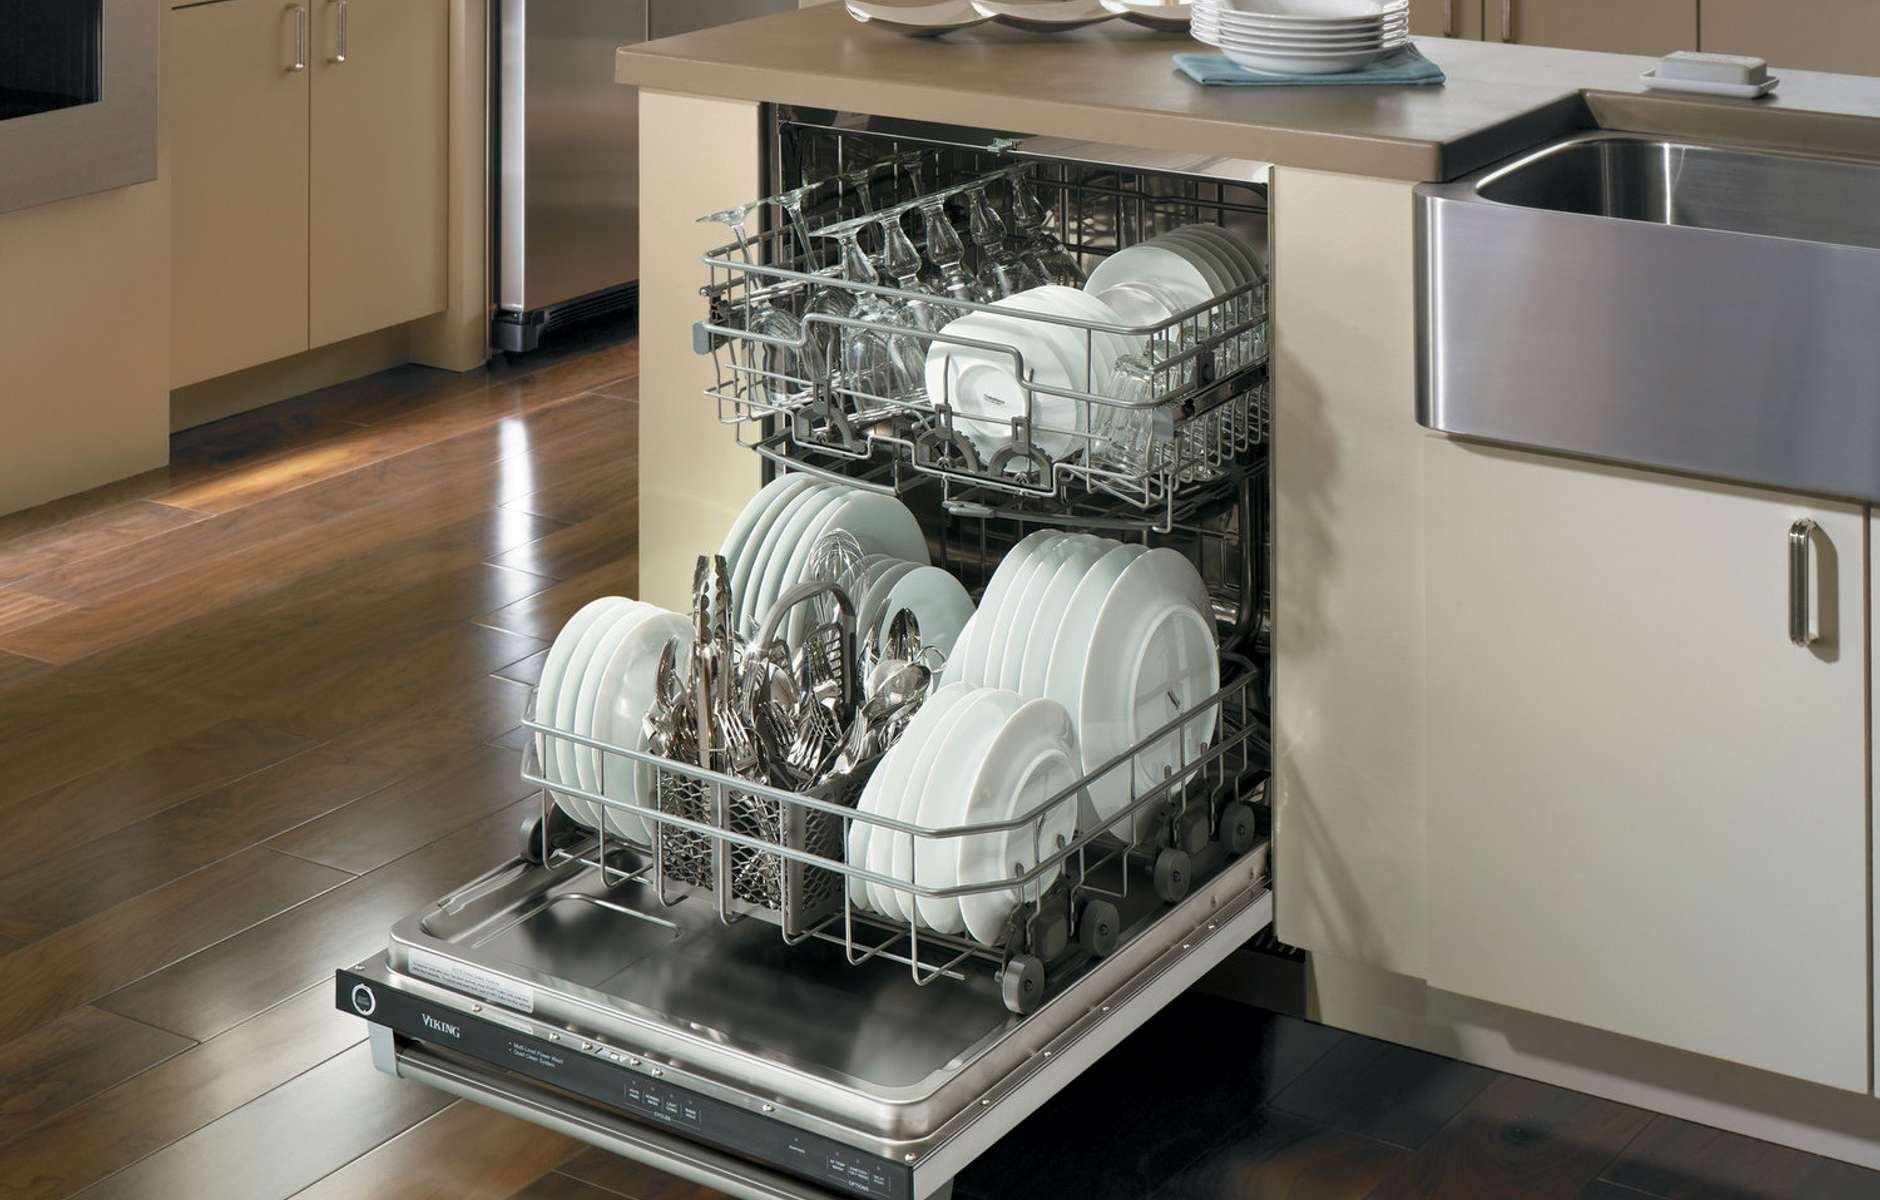 Лучшие посудомоечные машины встраиваемые отзывы. Miele g 5890 SCVI. Посудомойка Сименс 45 см встраиваемая. Посудомоечная машина Хаер 60. Посудомойка Bosch spv45dx20r.